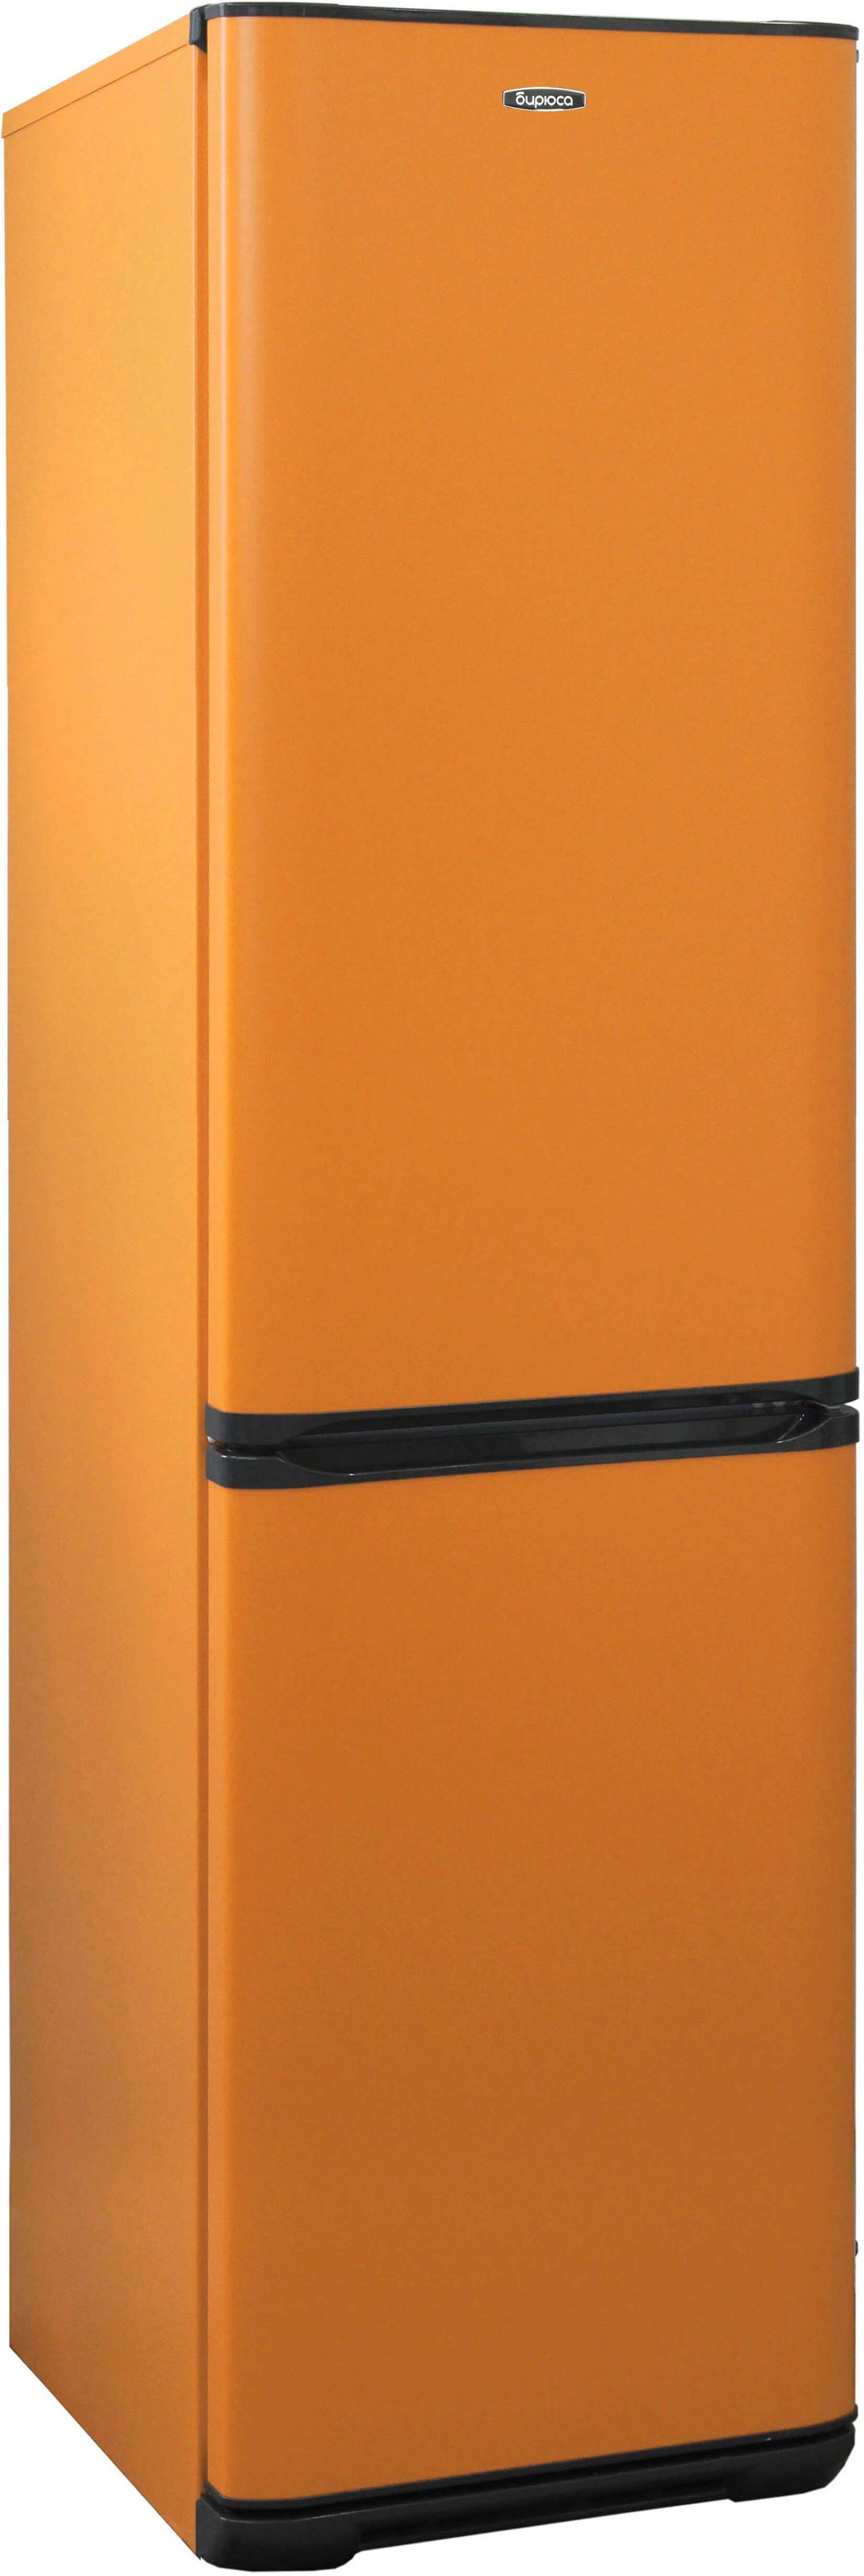 холодильник бирюса 380nf, купить в Красноярске холодильник бирюса 380nf,  купить в Красноярске дешево холодильник бирюса 380nf, купить в Красноярске минимальной цене холодильник бирюса 380nf